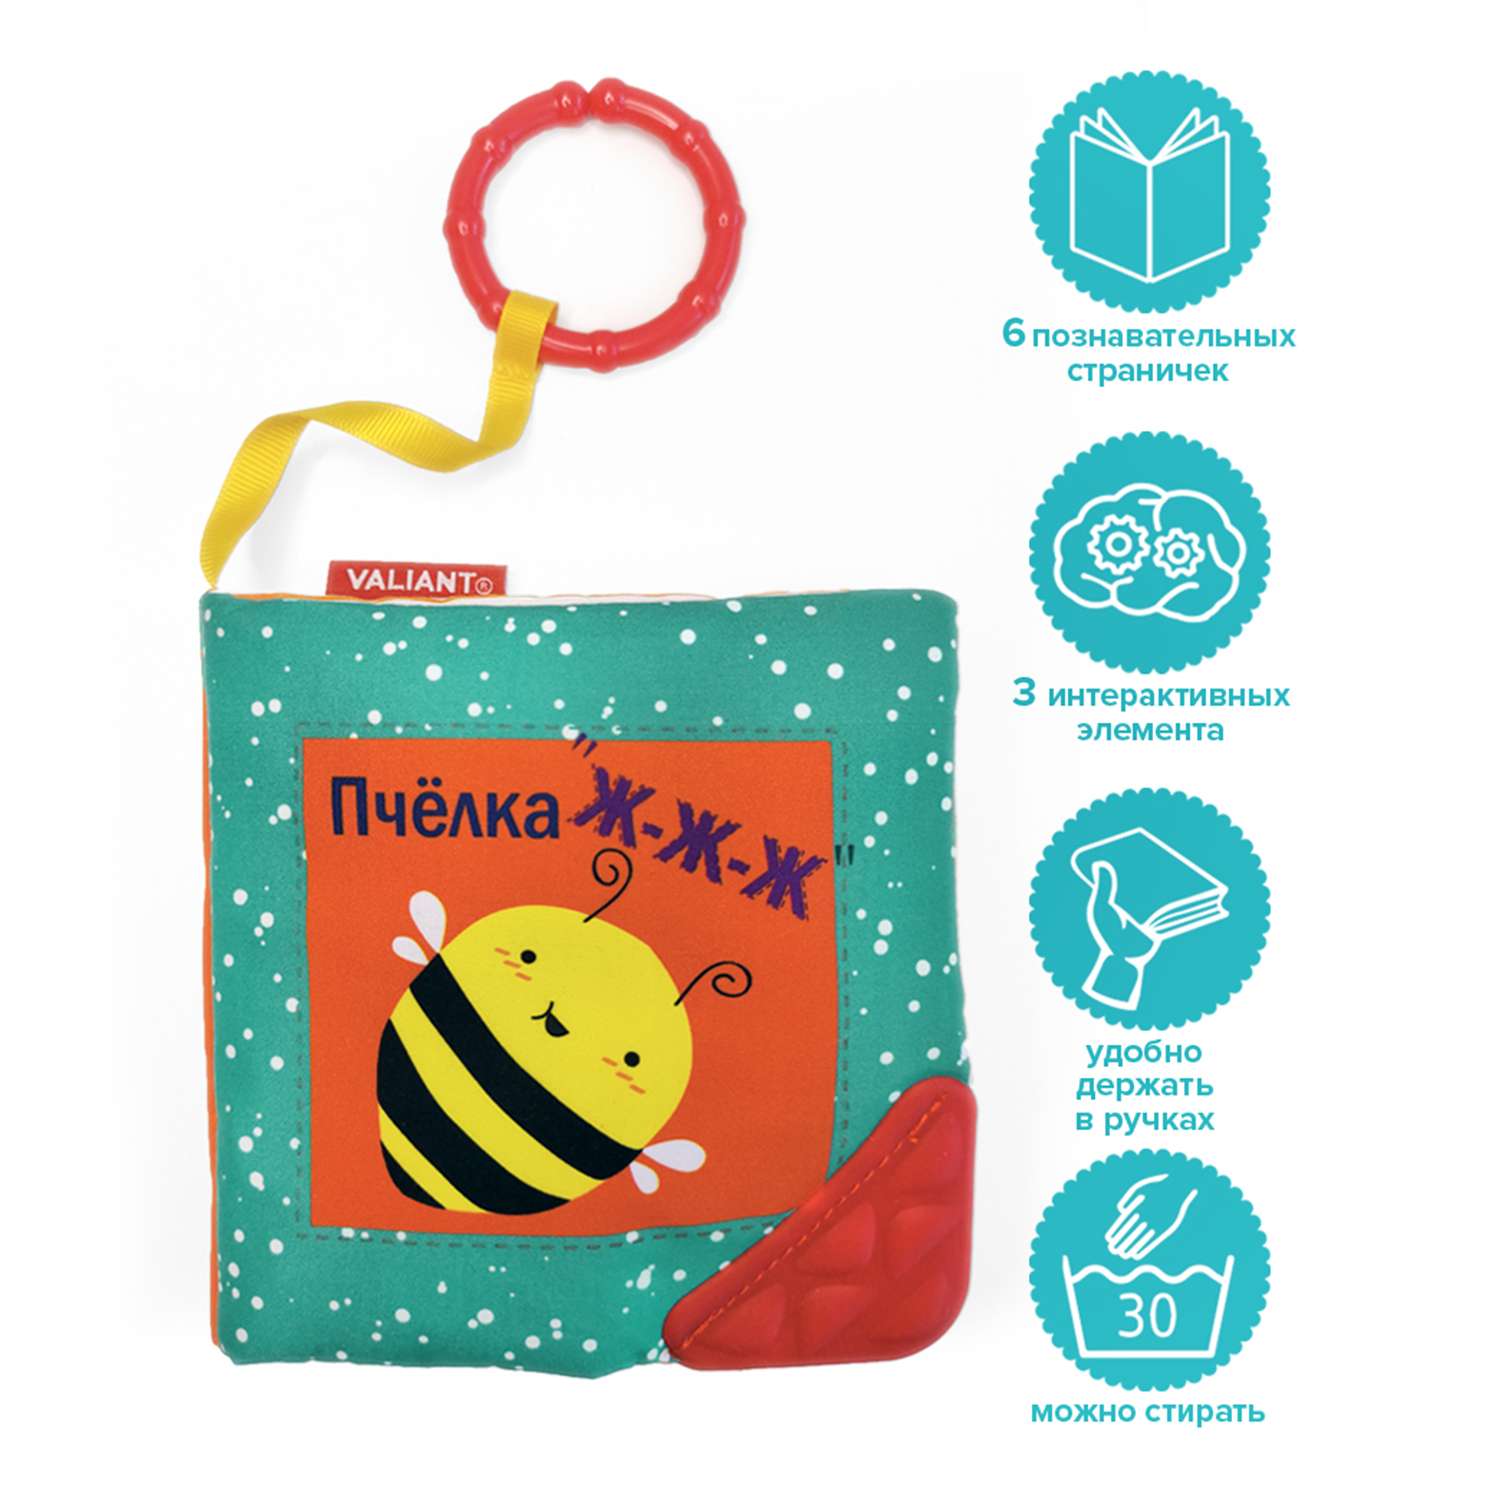 Книжка-игрушка VALIANT для малышей «Пчёлка ж-ж-ж» с прорезывателем и подвесом - фото 2